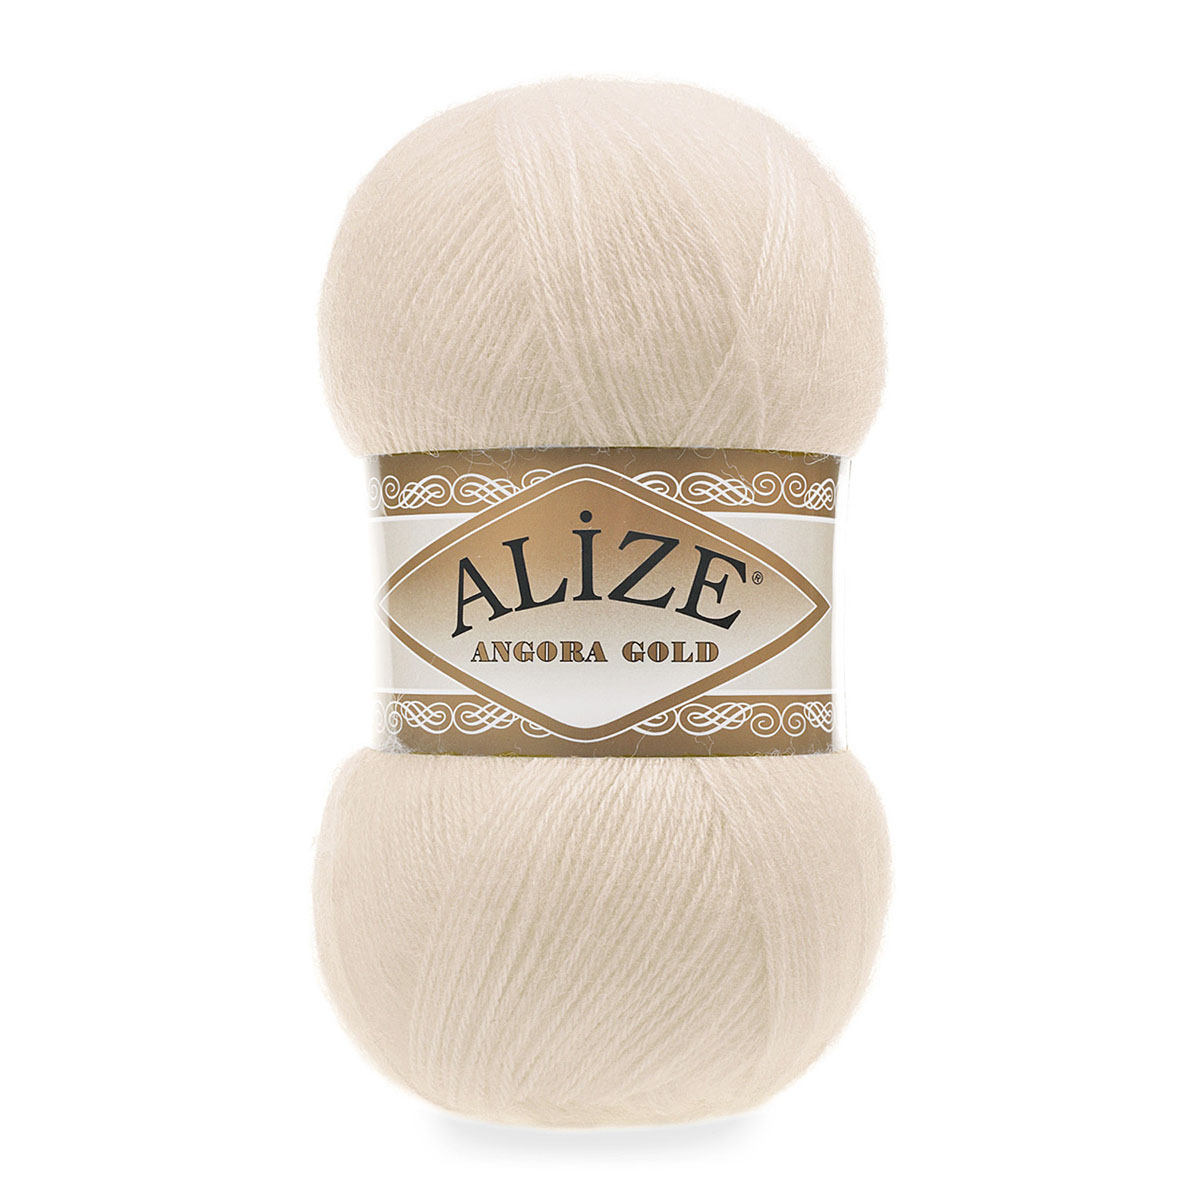 Пряжа Alize мягкая теплая для шарфов кардиганов Angora Gold 100 гр 550 м 5 мотков 67 экрю - фото 6